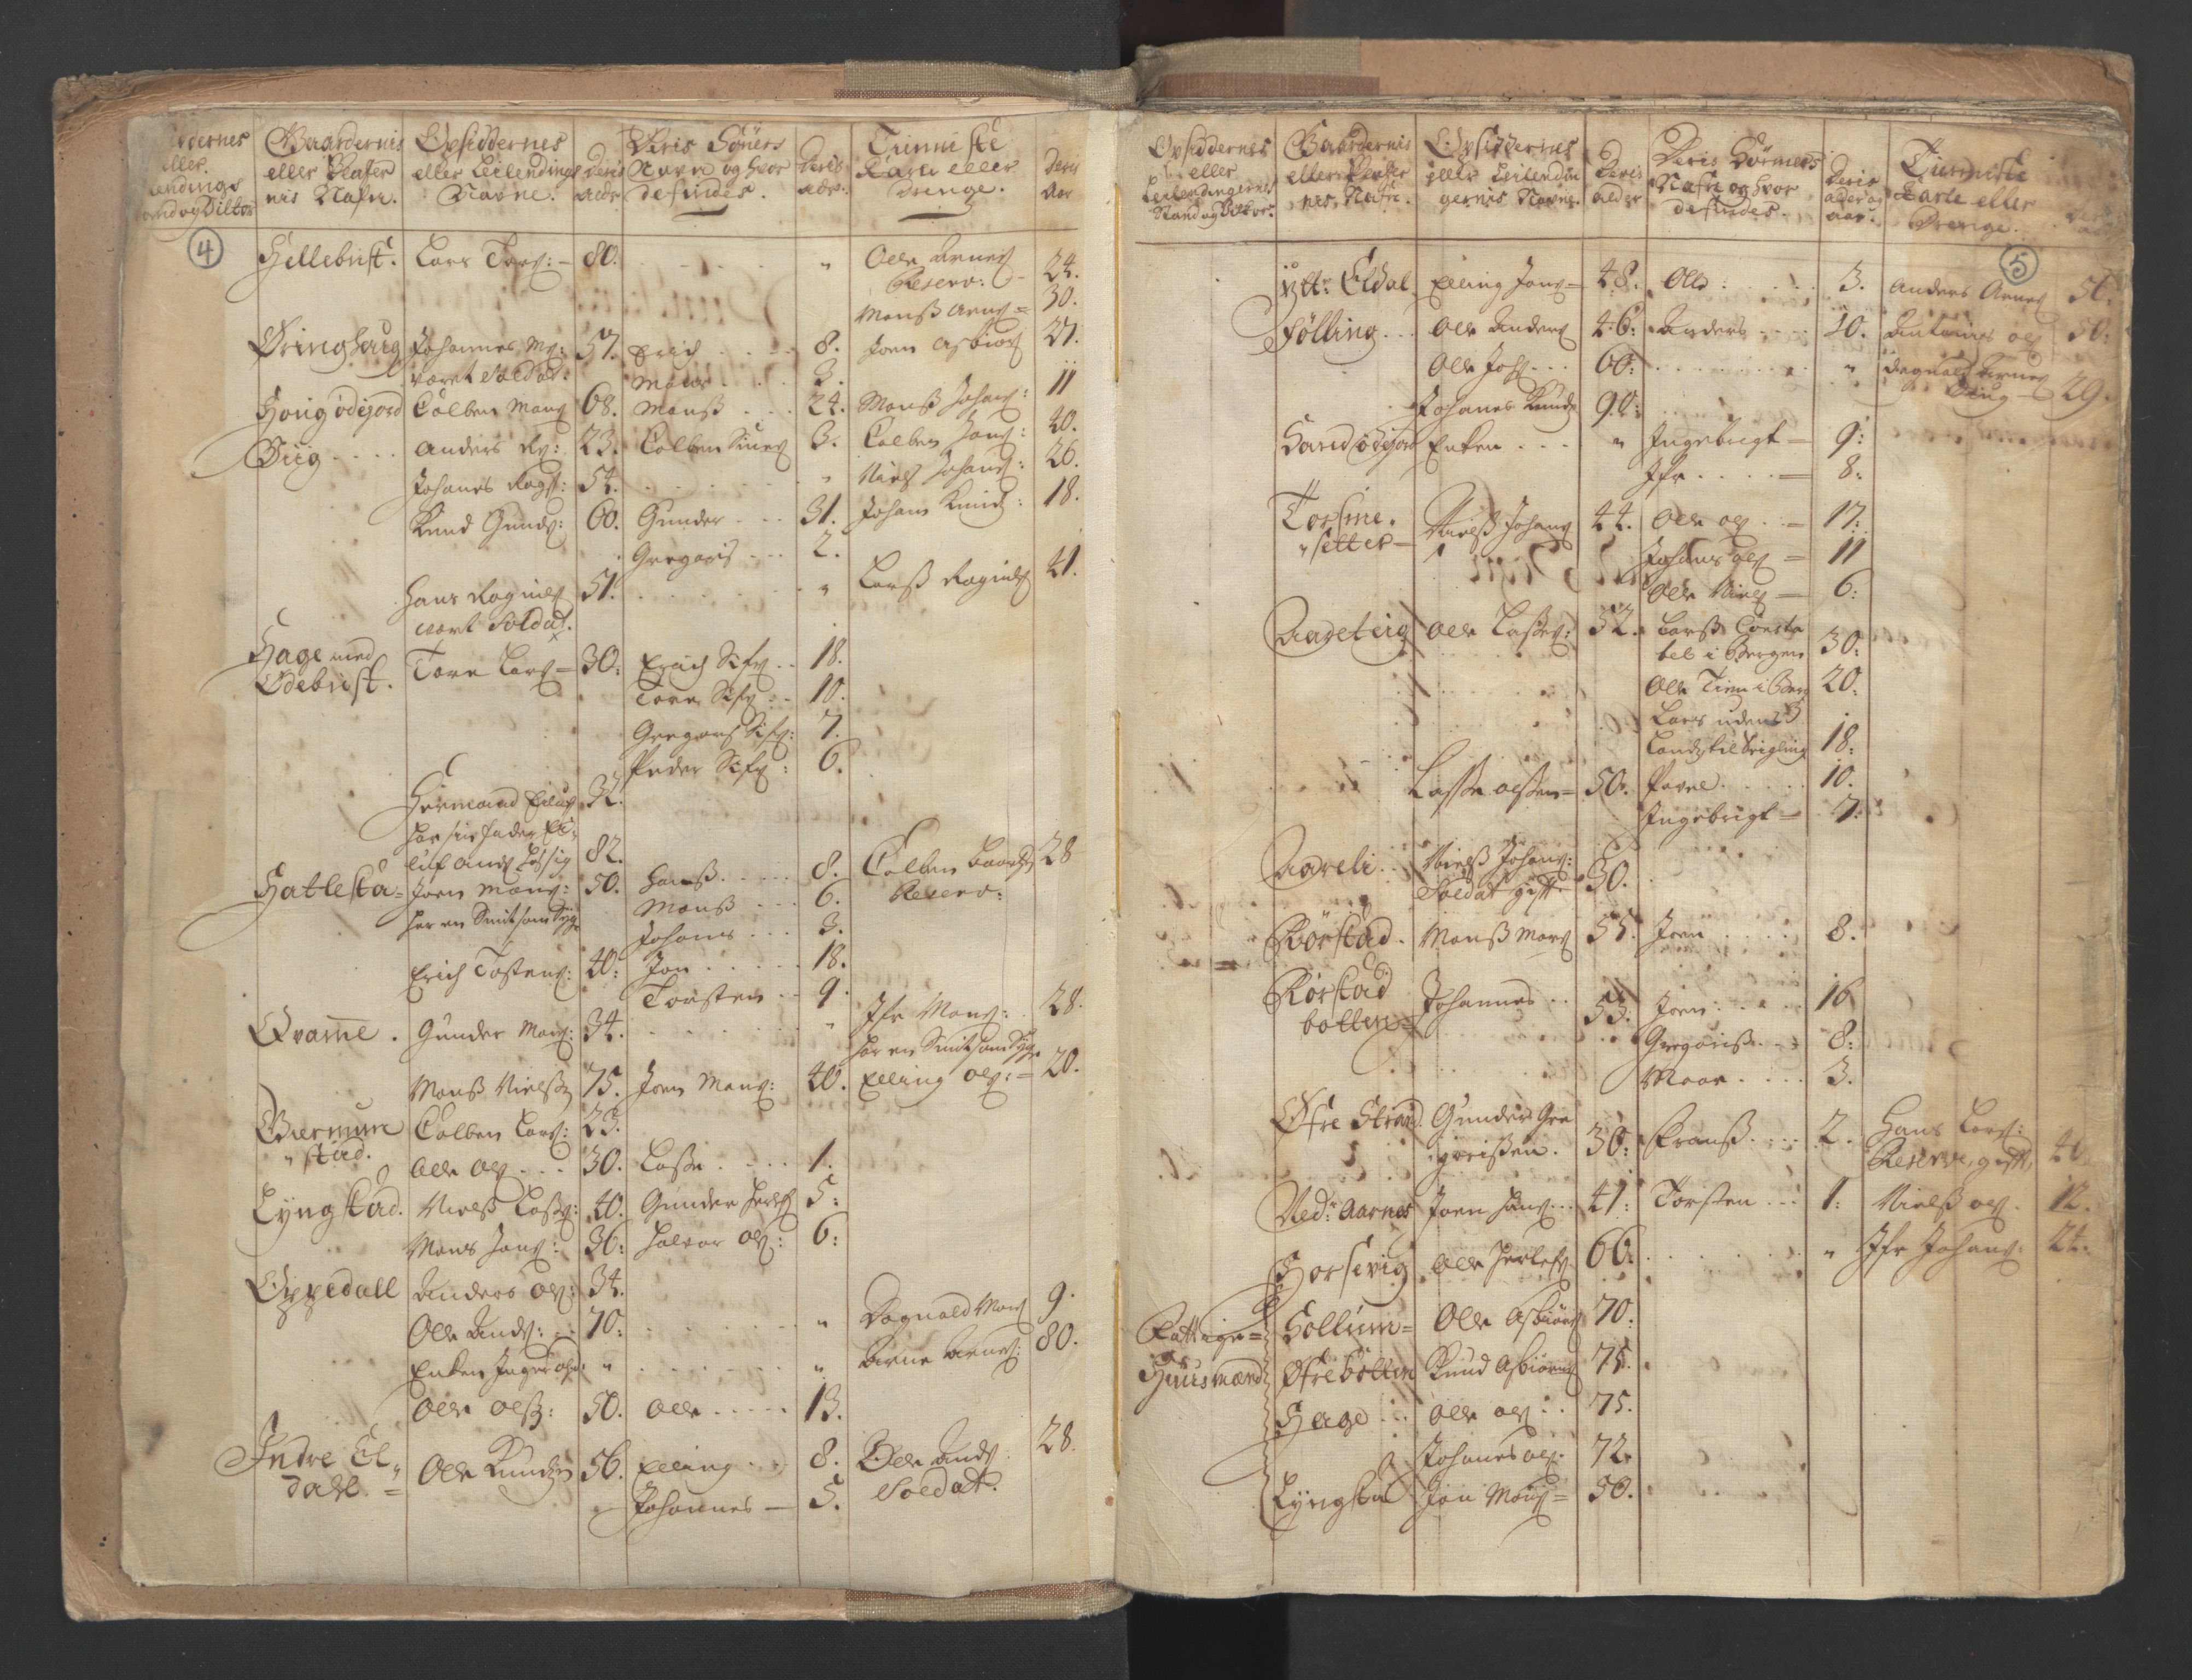 RA, Census (manntall) 1701, no. 9: Sunnfjord fogderi, Nordfjord fogderi and Svanø birk, 1701, p. 4-5